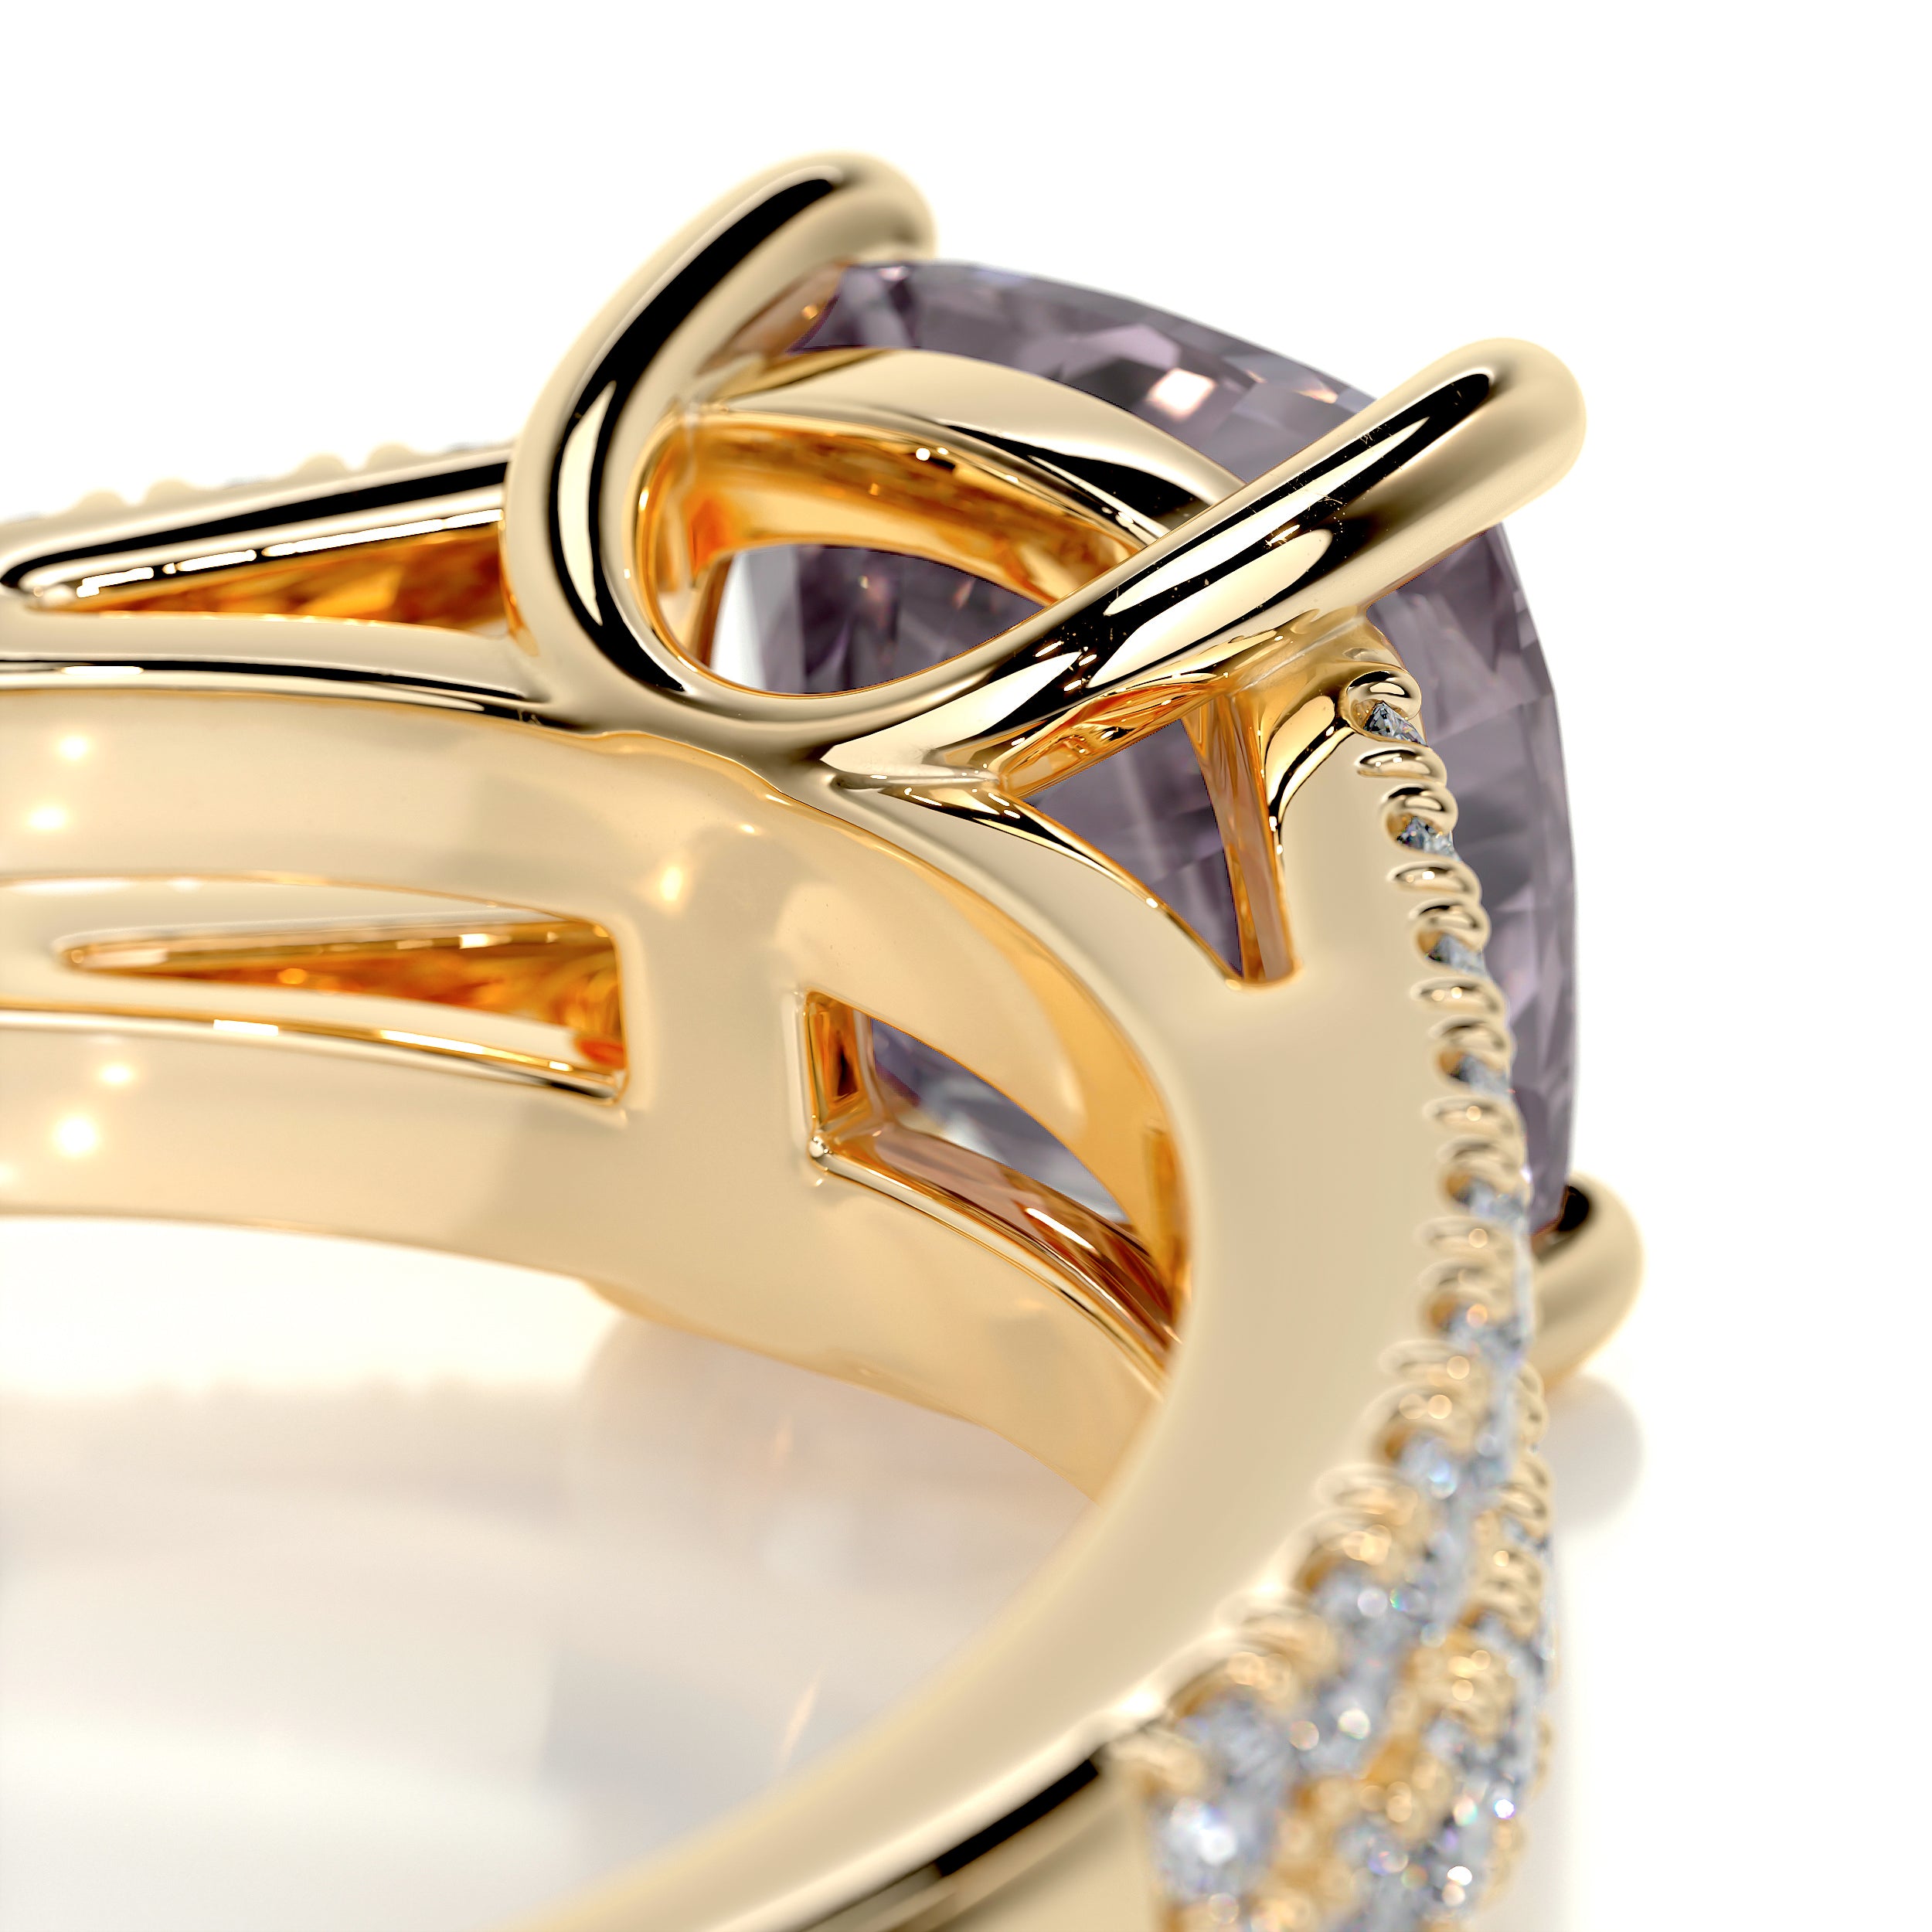 Sadie Gemstone & Diamonds Ring   (2.05 Carat) -18K Yellow Gold